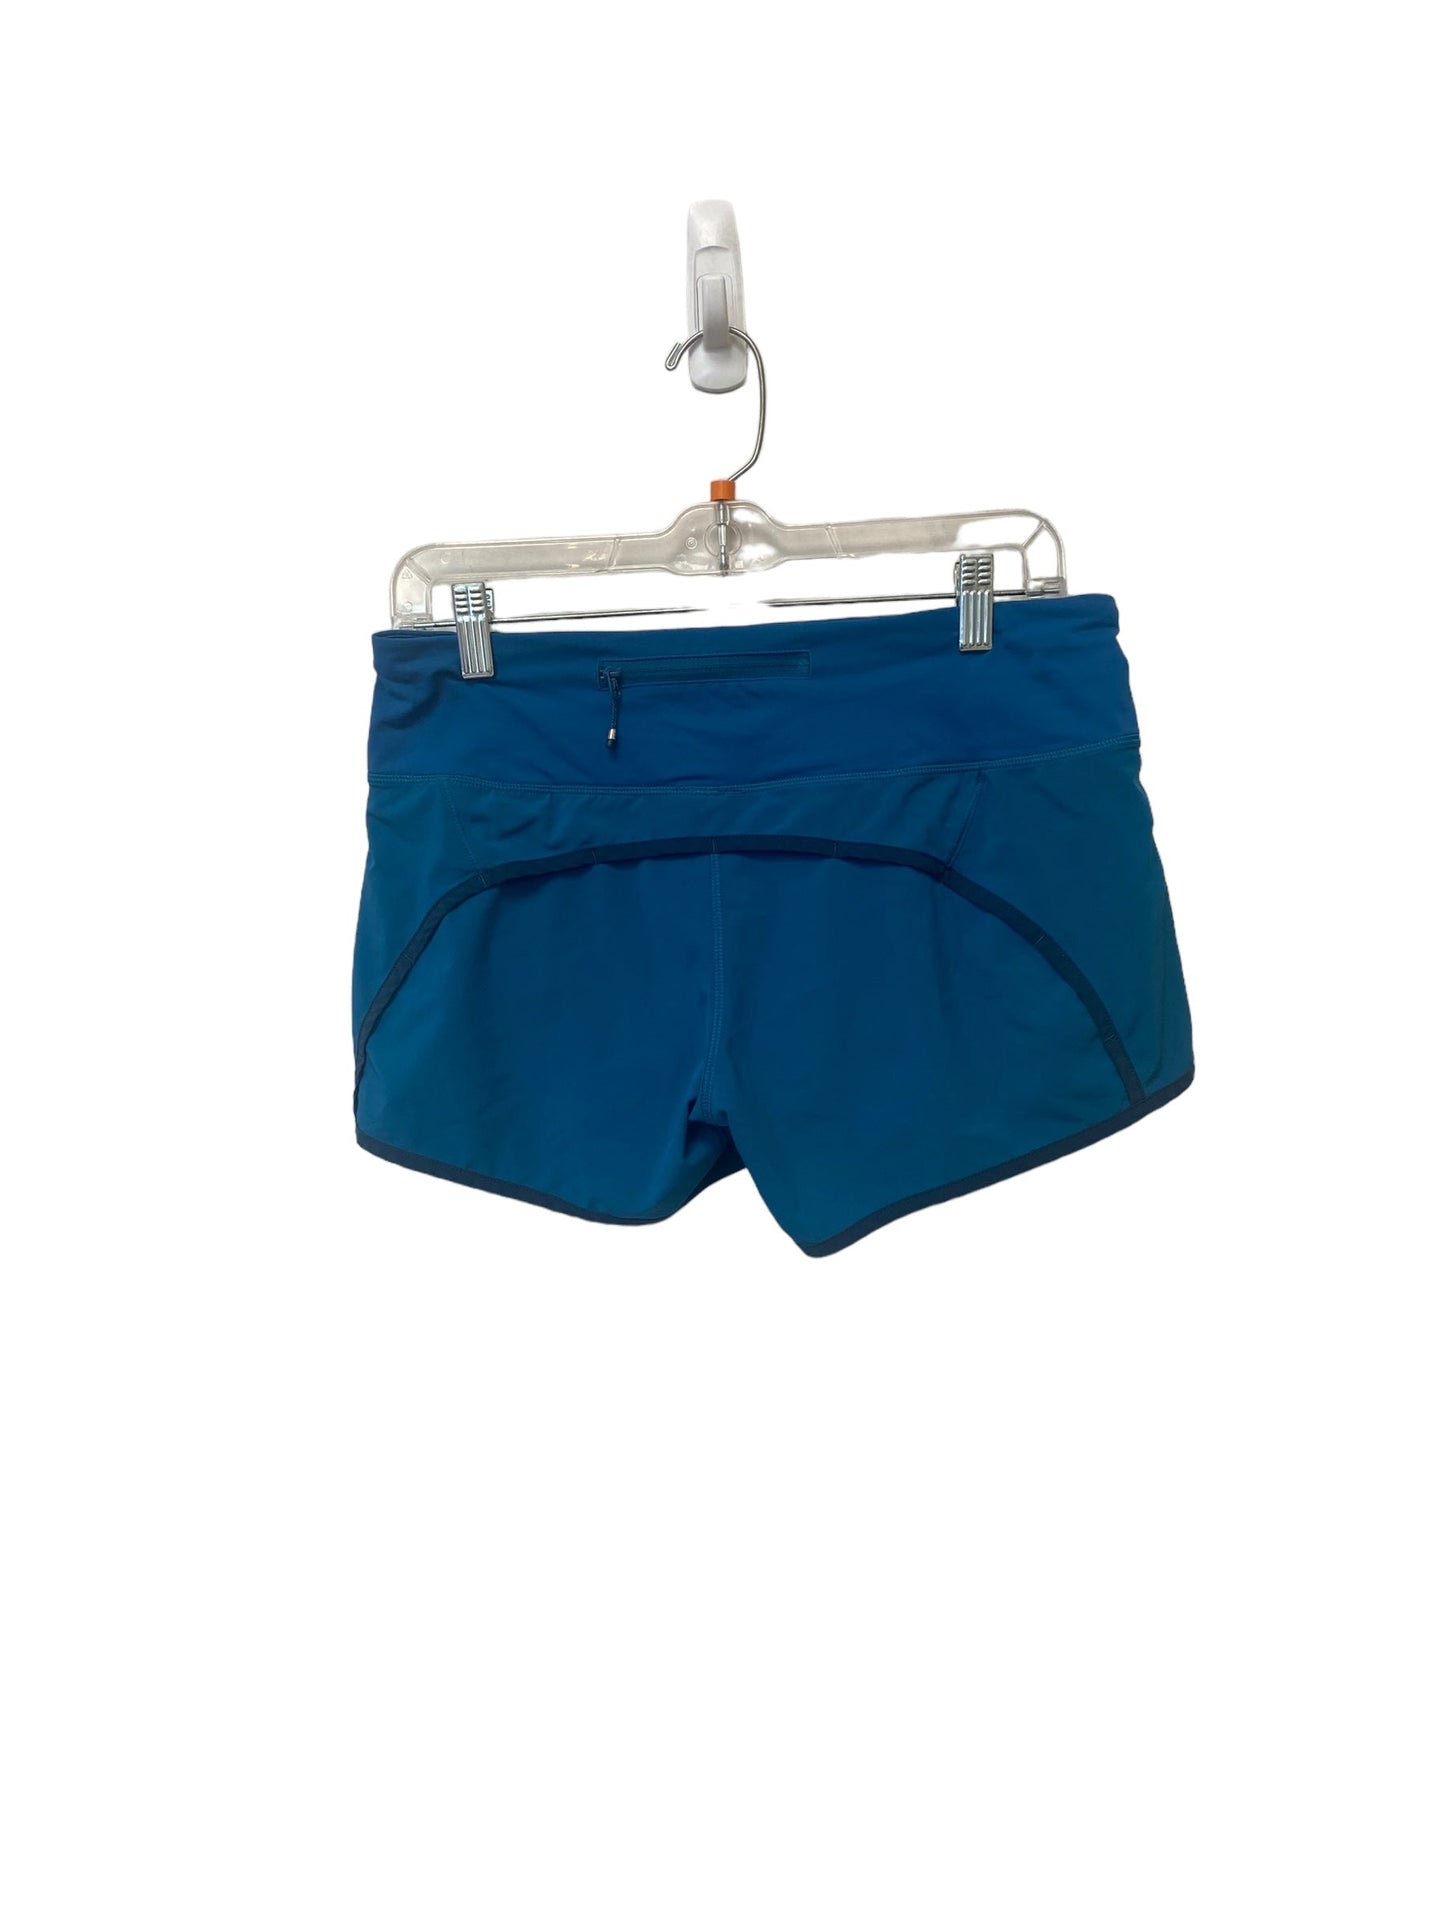 Blue Athletic Shorts Lululemon, Size 6